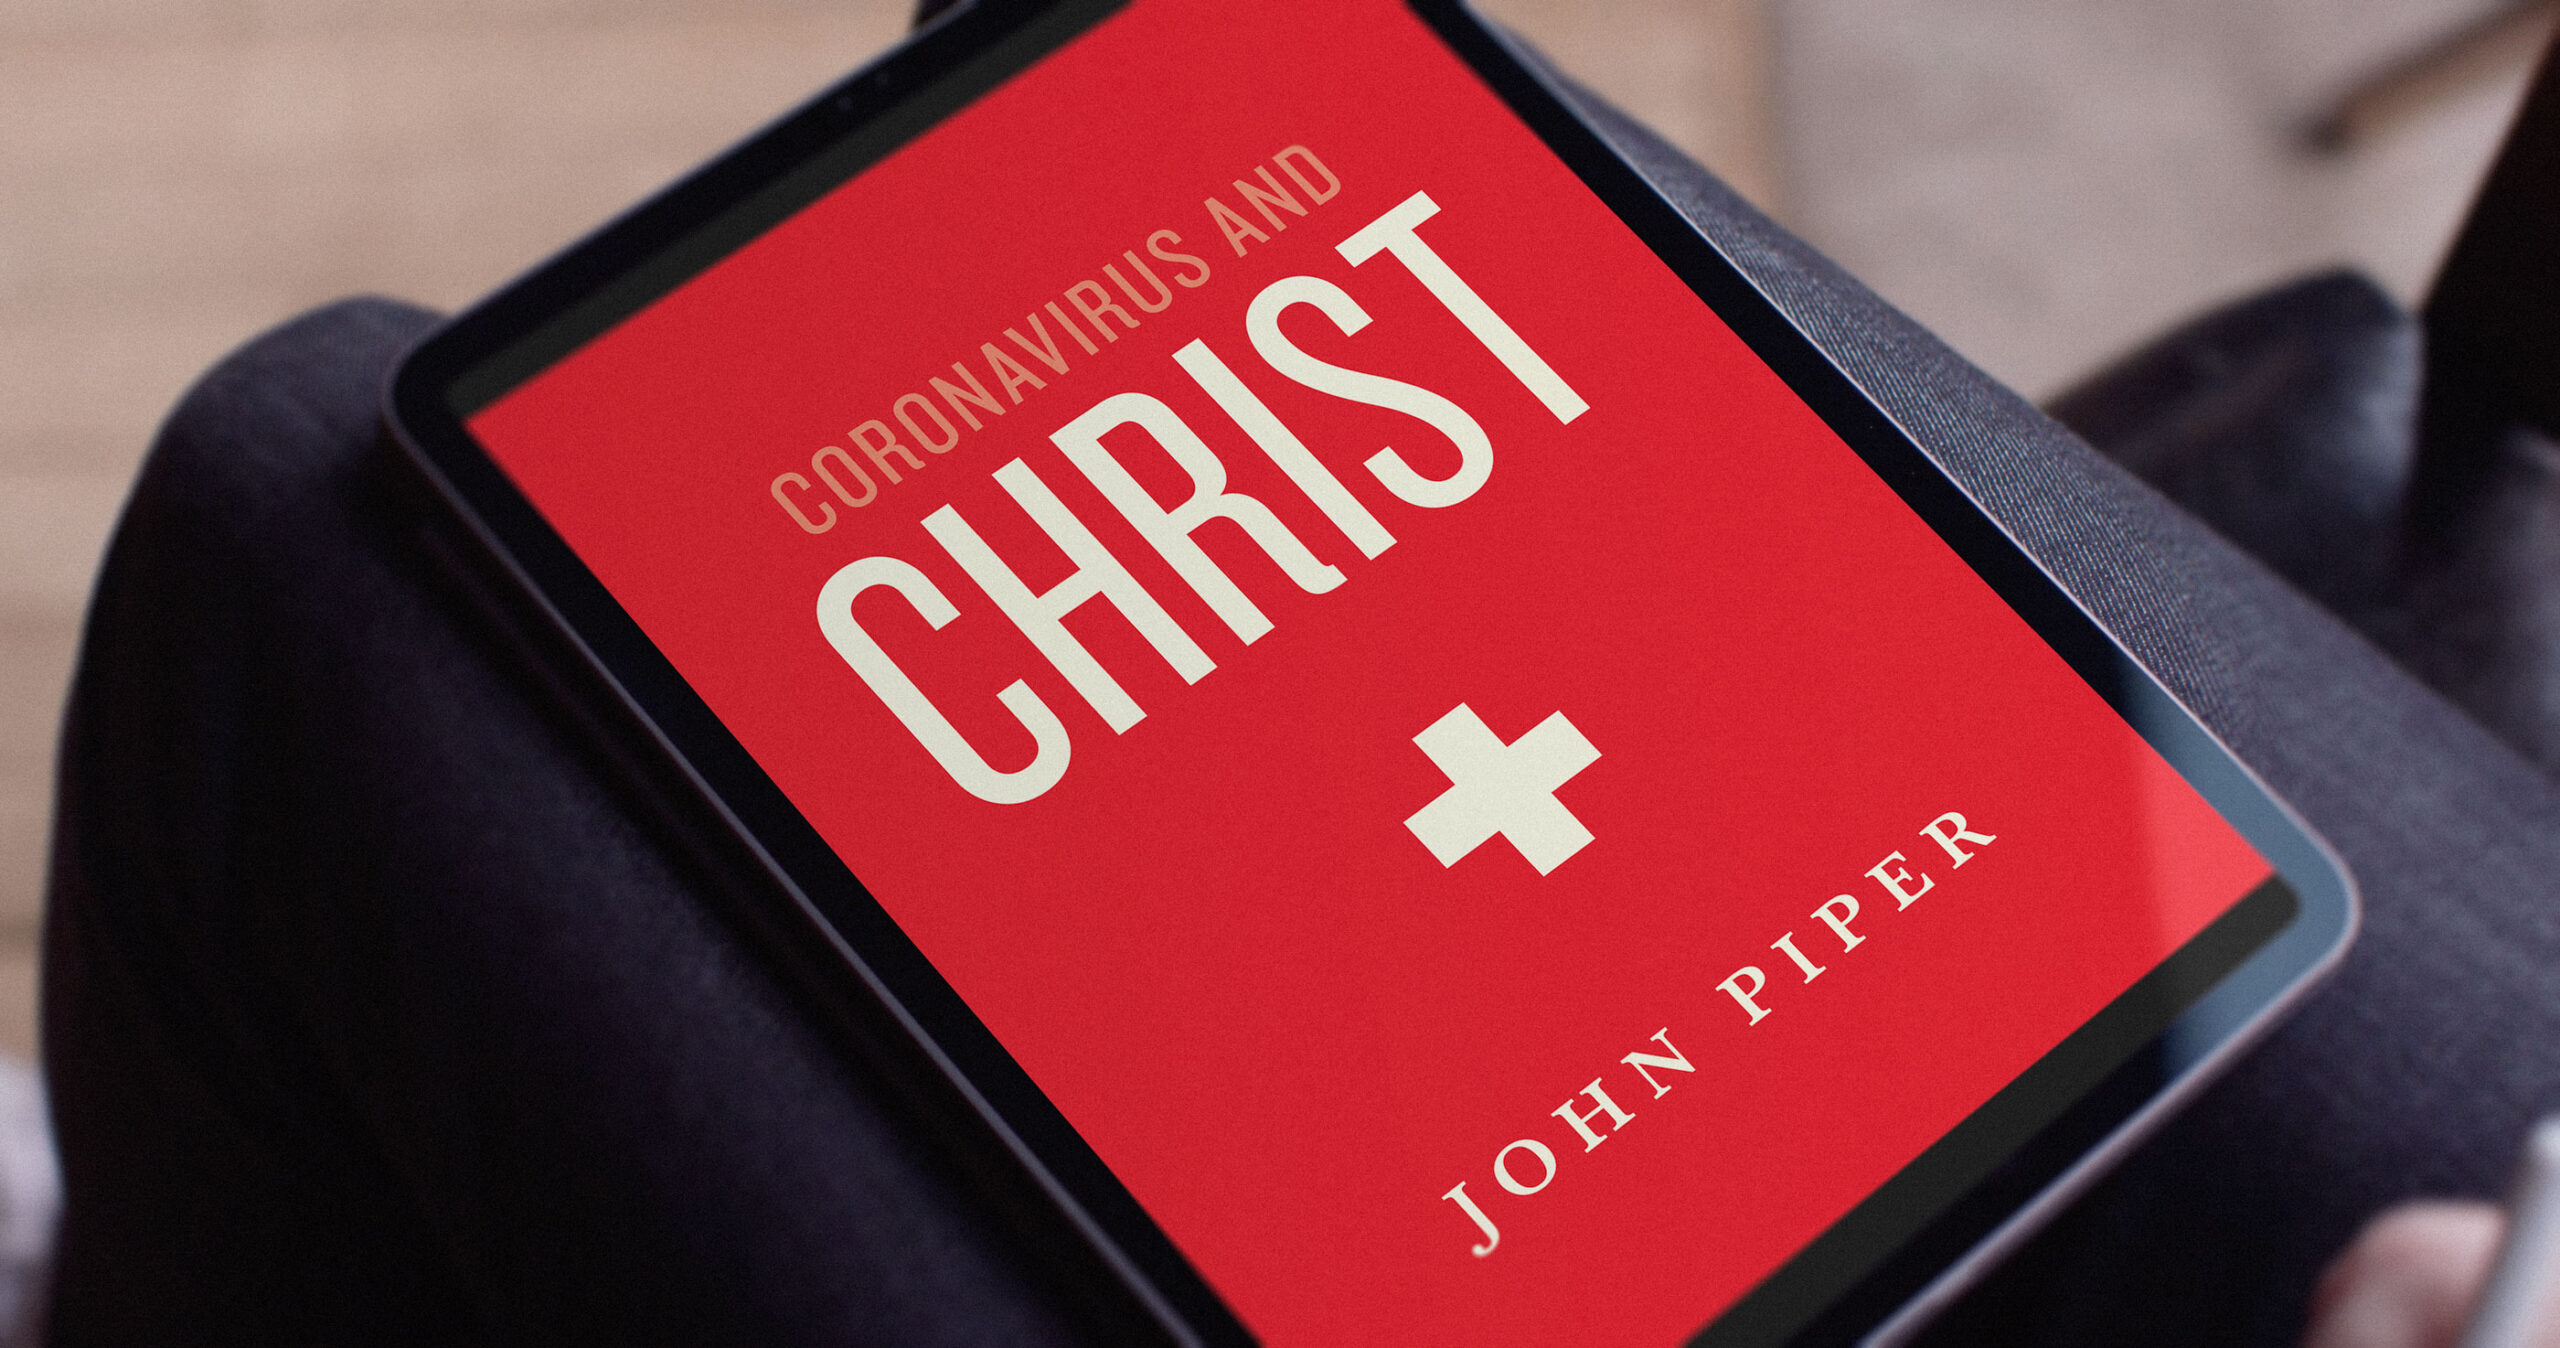 John Piper on “Coronavirus and Christ”